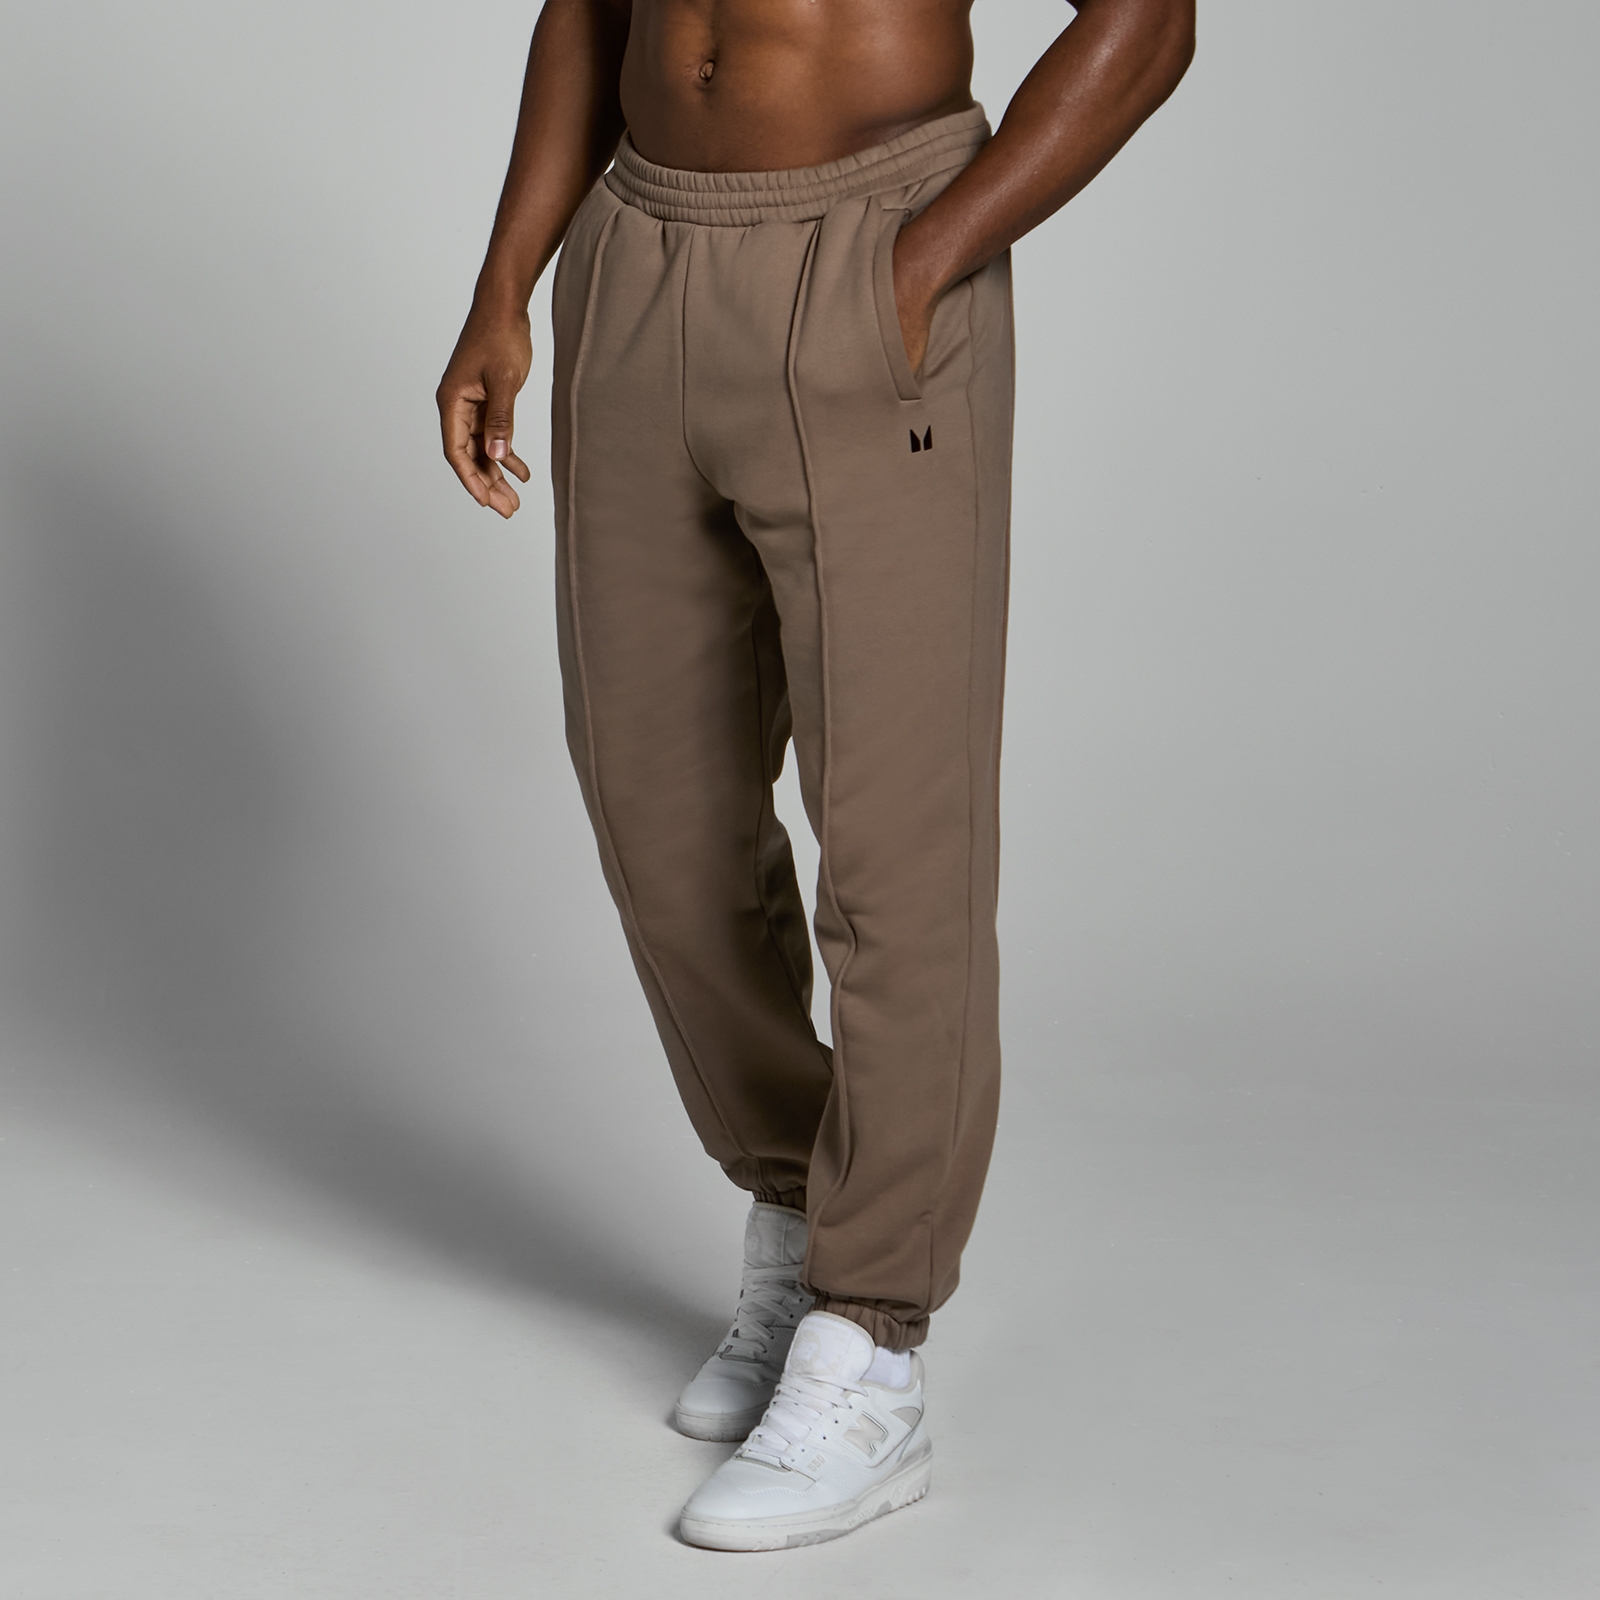 Image of Pantaloni da jogging pesanti oversize MP Lifestyle da uomo - Marrone chiaro - XL